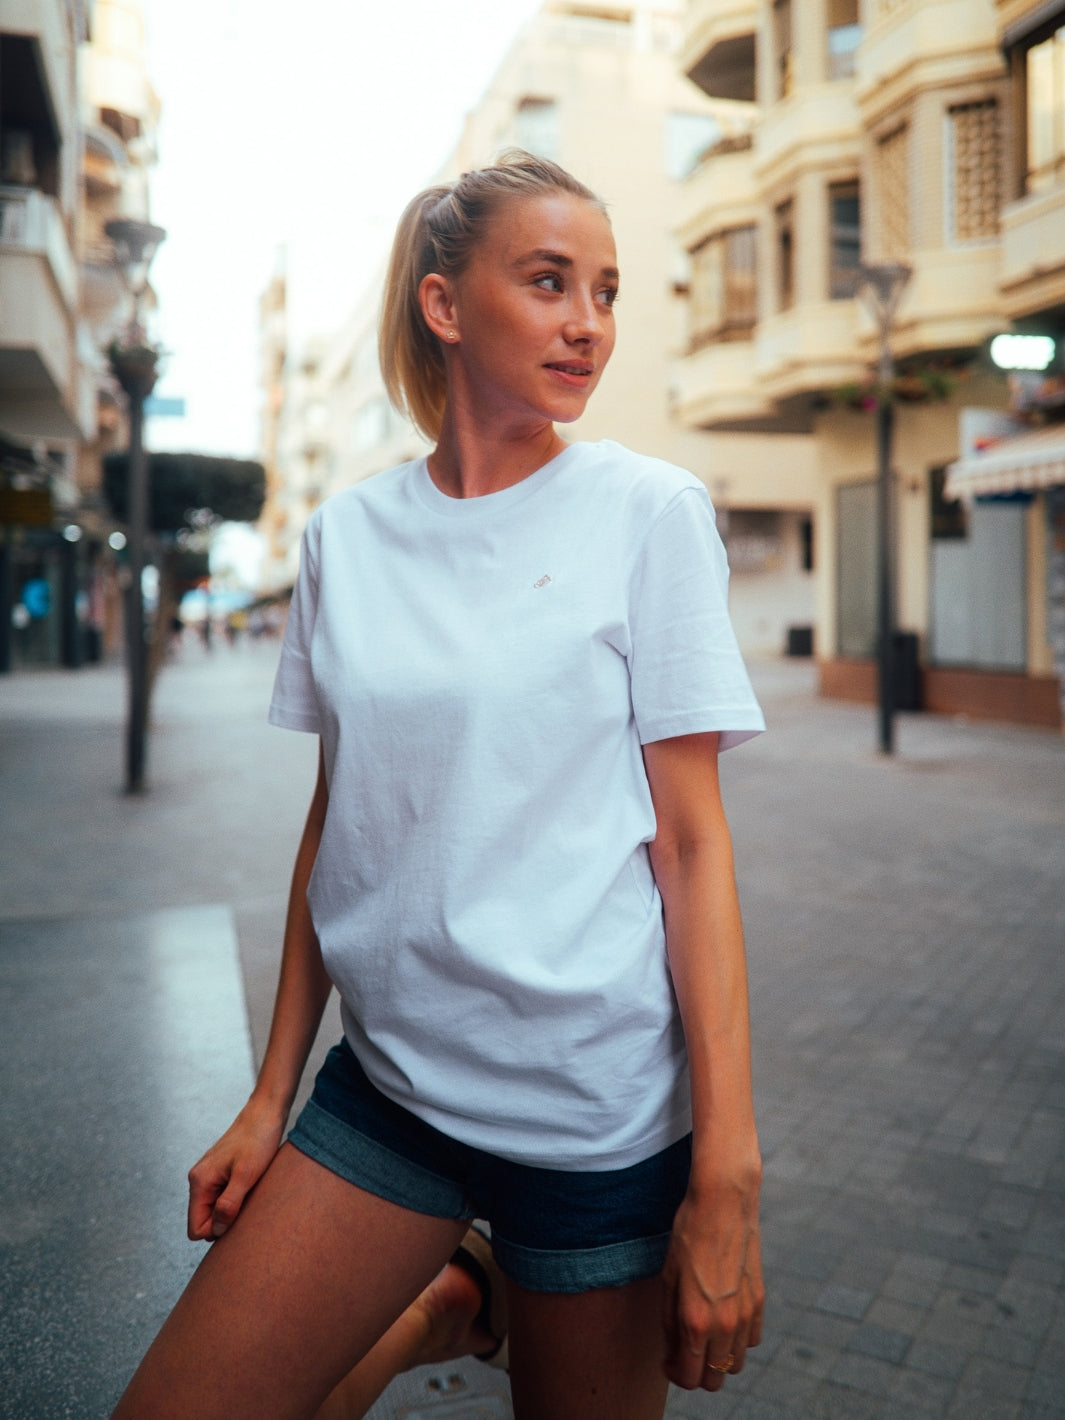 Cape dámské tričko z biobavlny s kulatým výstřihem bílé žena pózuje ve městě